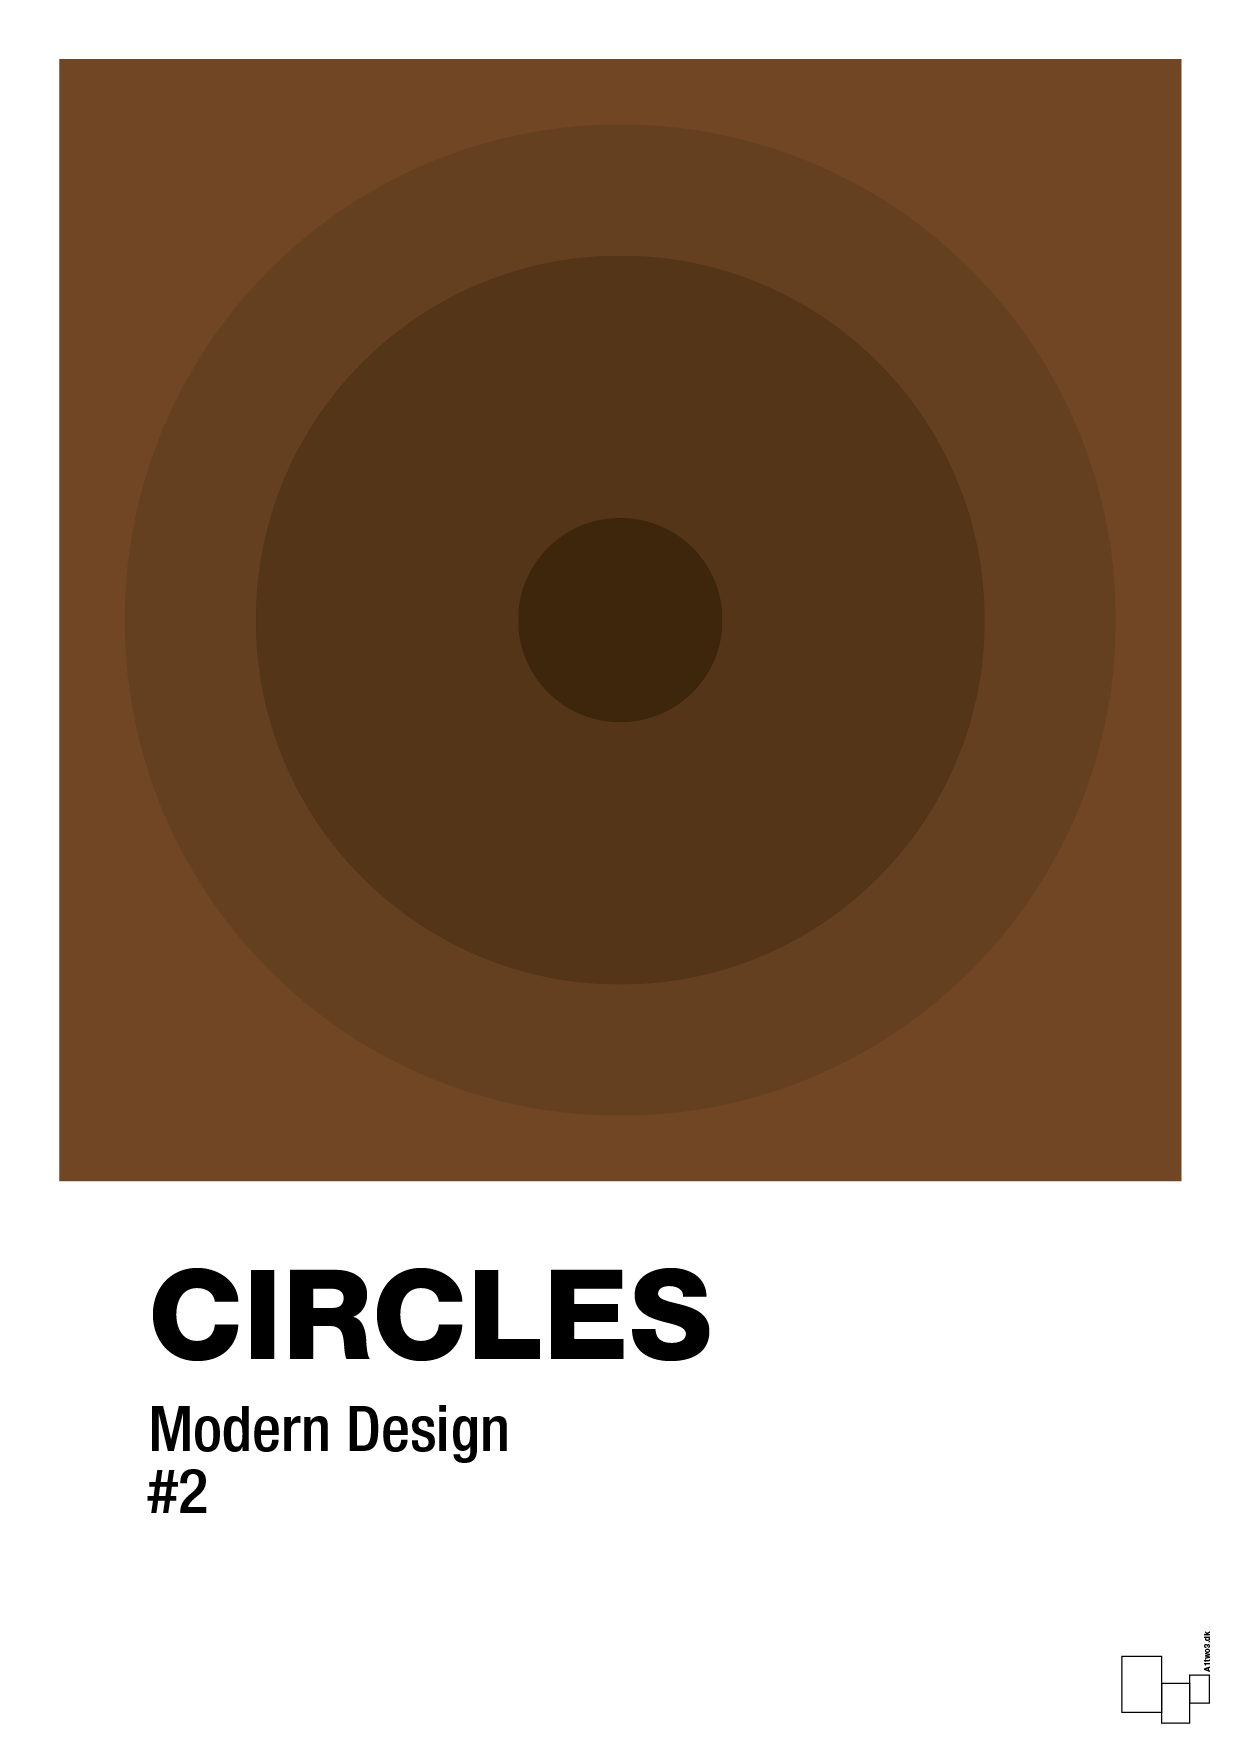 circles #2 - Plakat med Grafik i Dark Brown